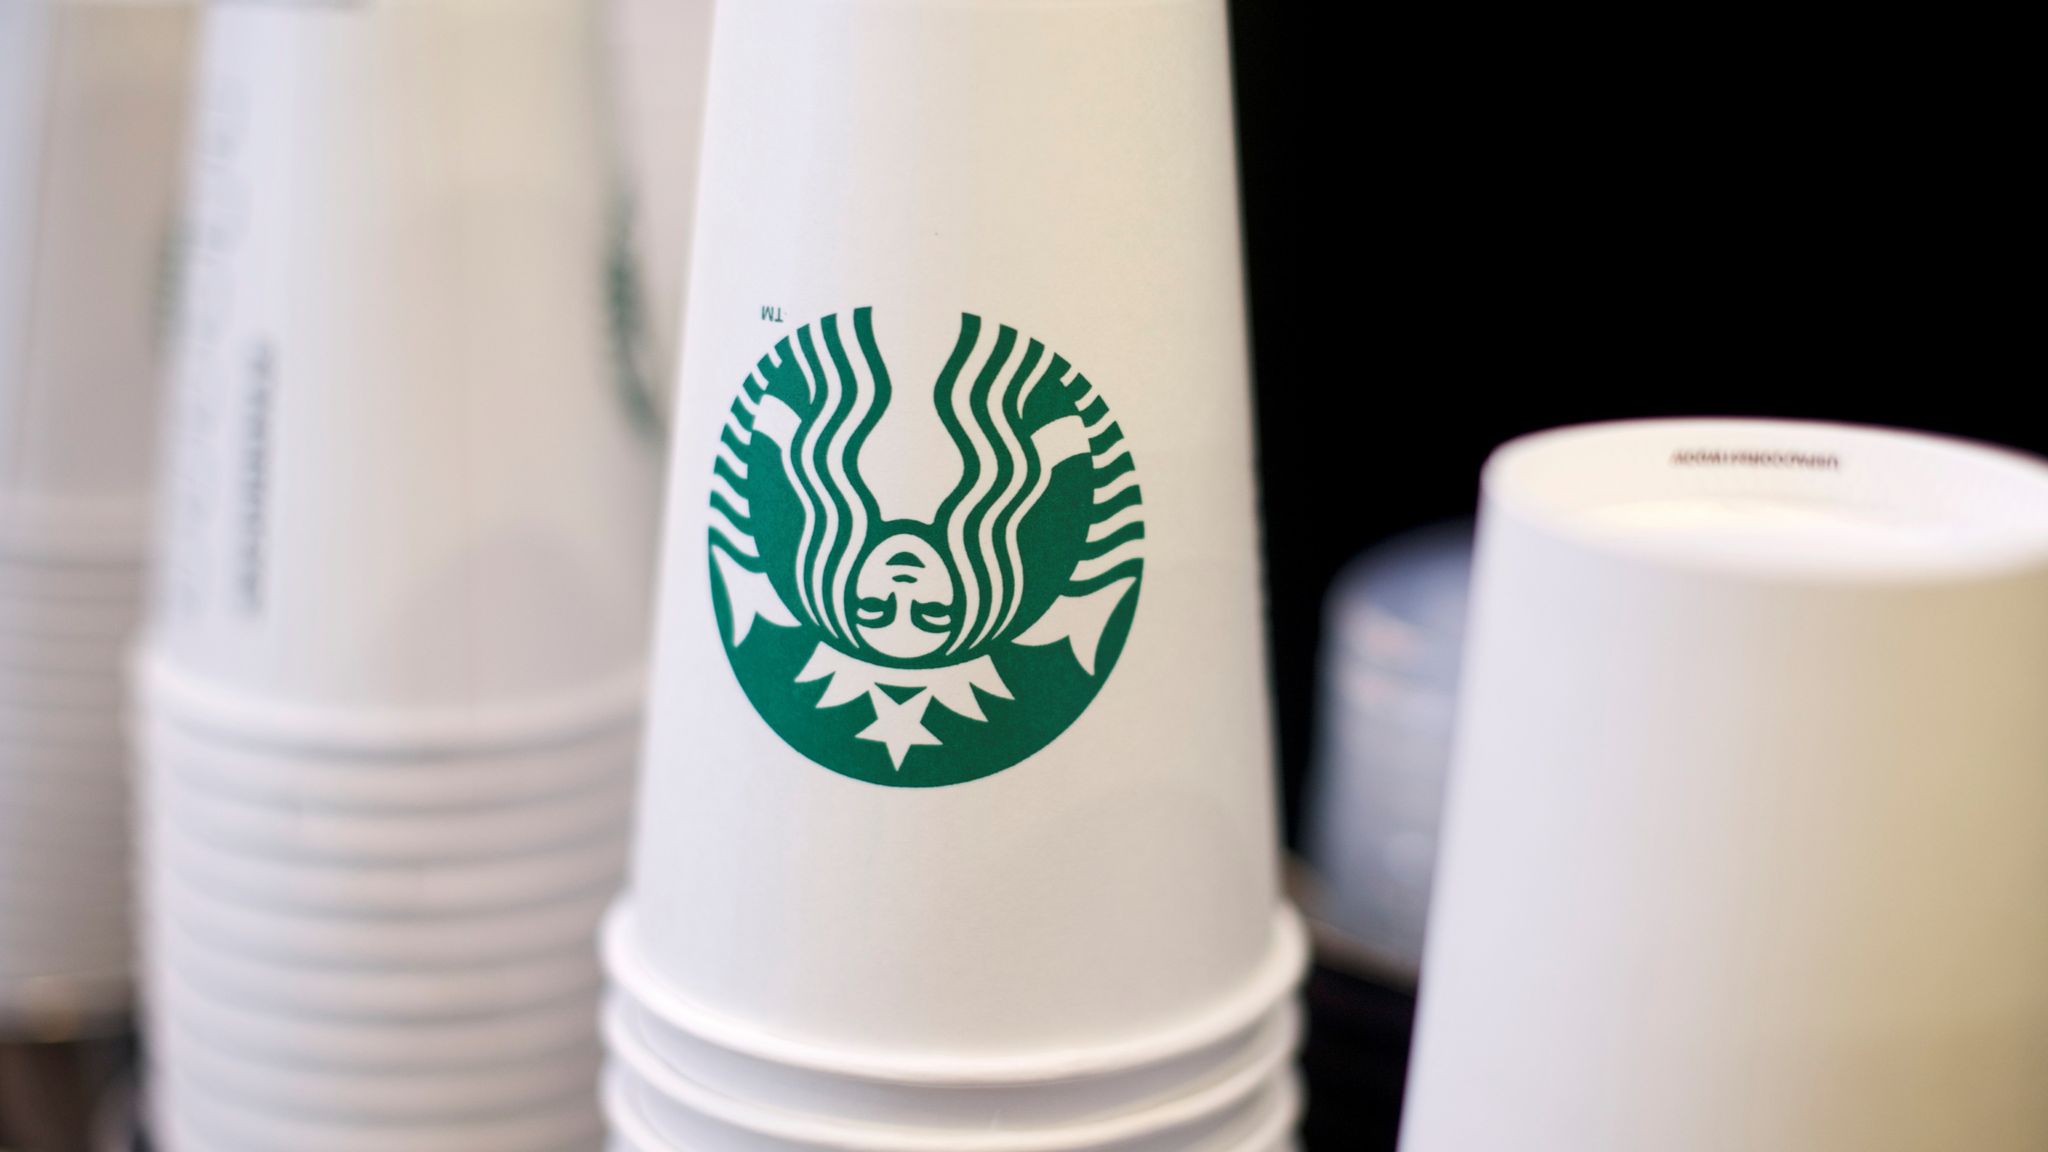 Coronavirus Starbucks bans reusable cups over outbreak fears